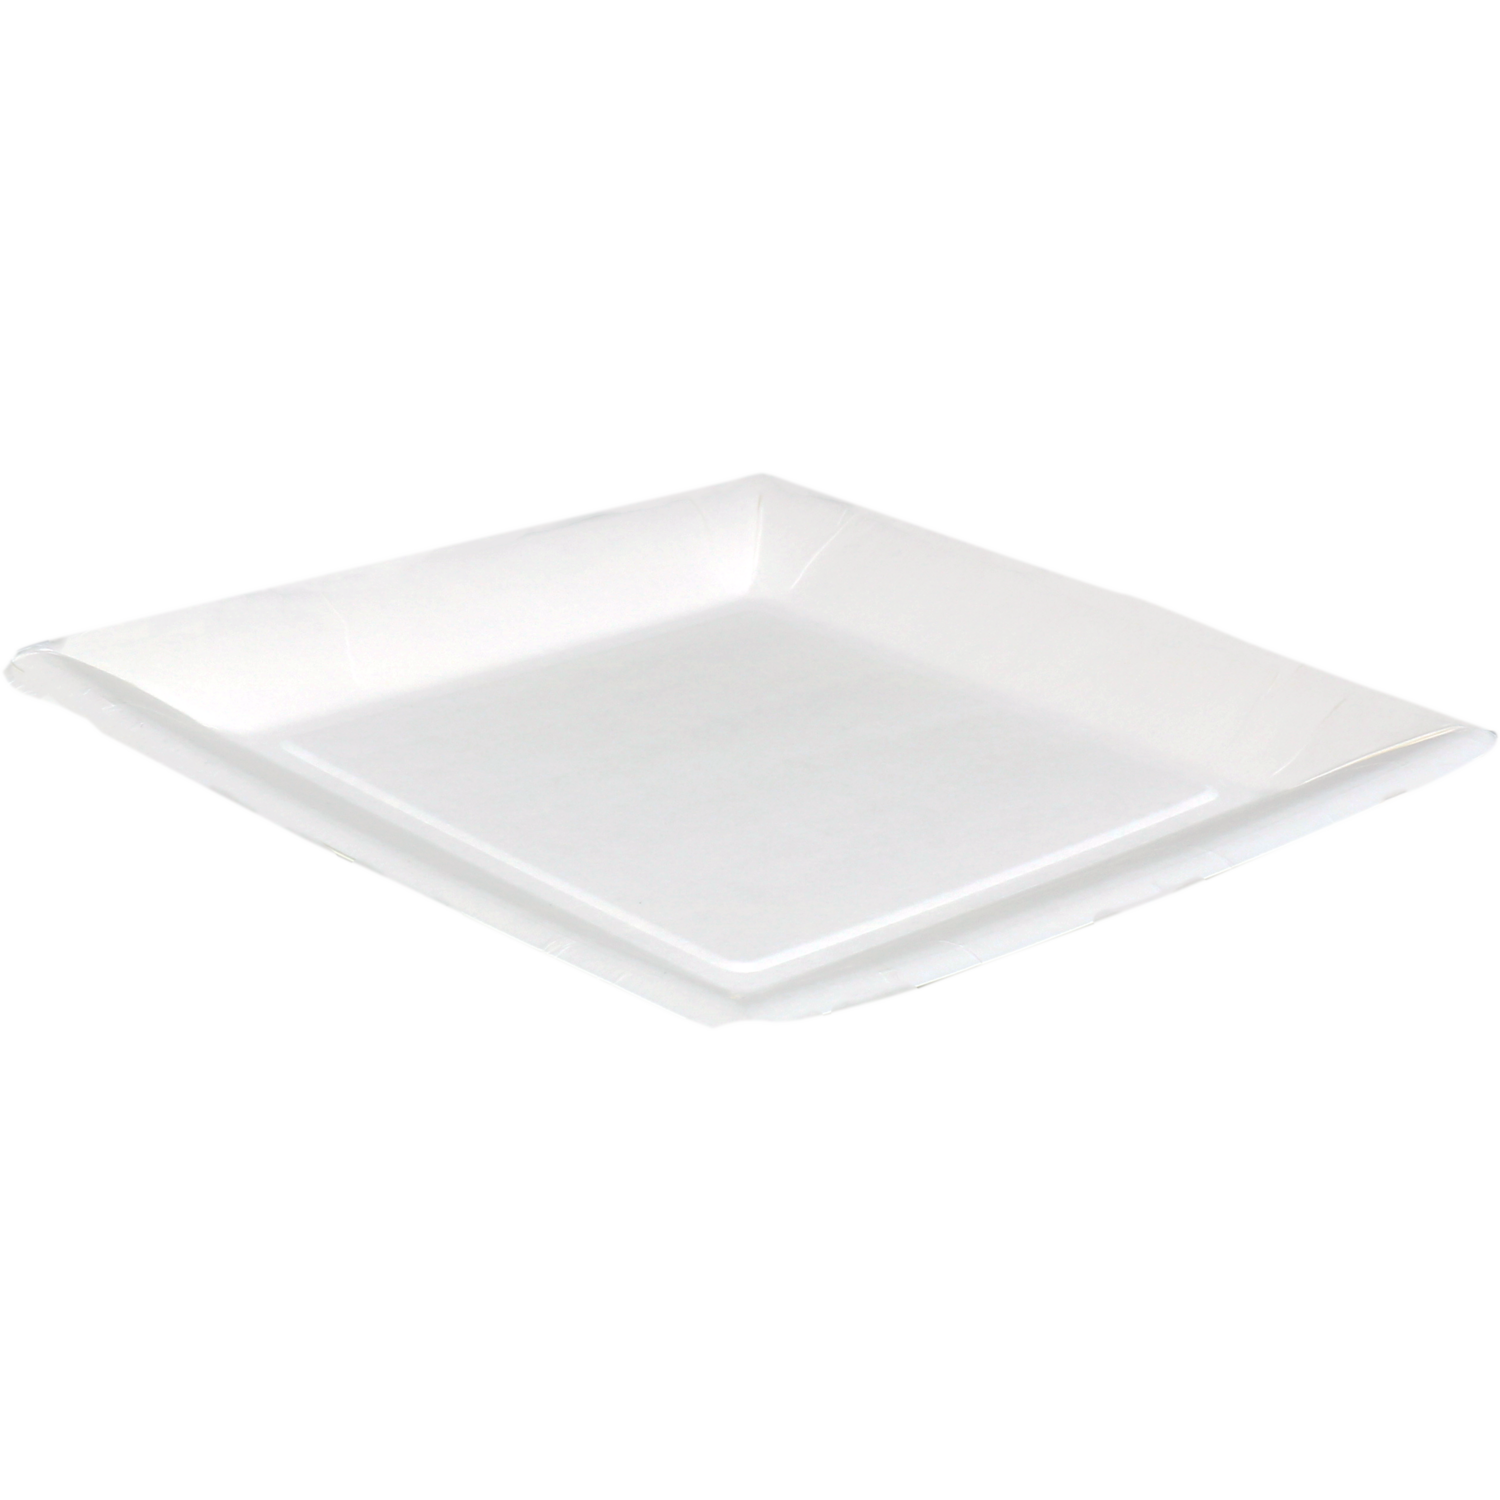 Biodore Plate, square, 1 compartment, cardboard, 23x23cm, white 1